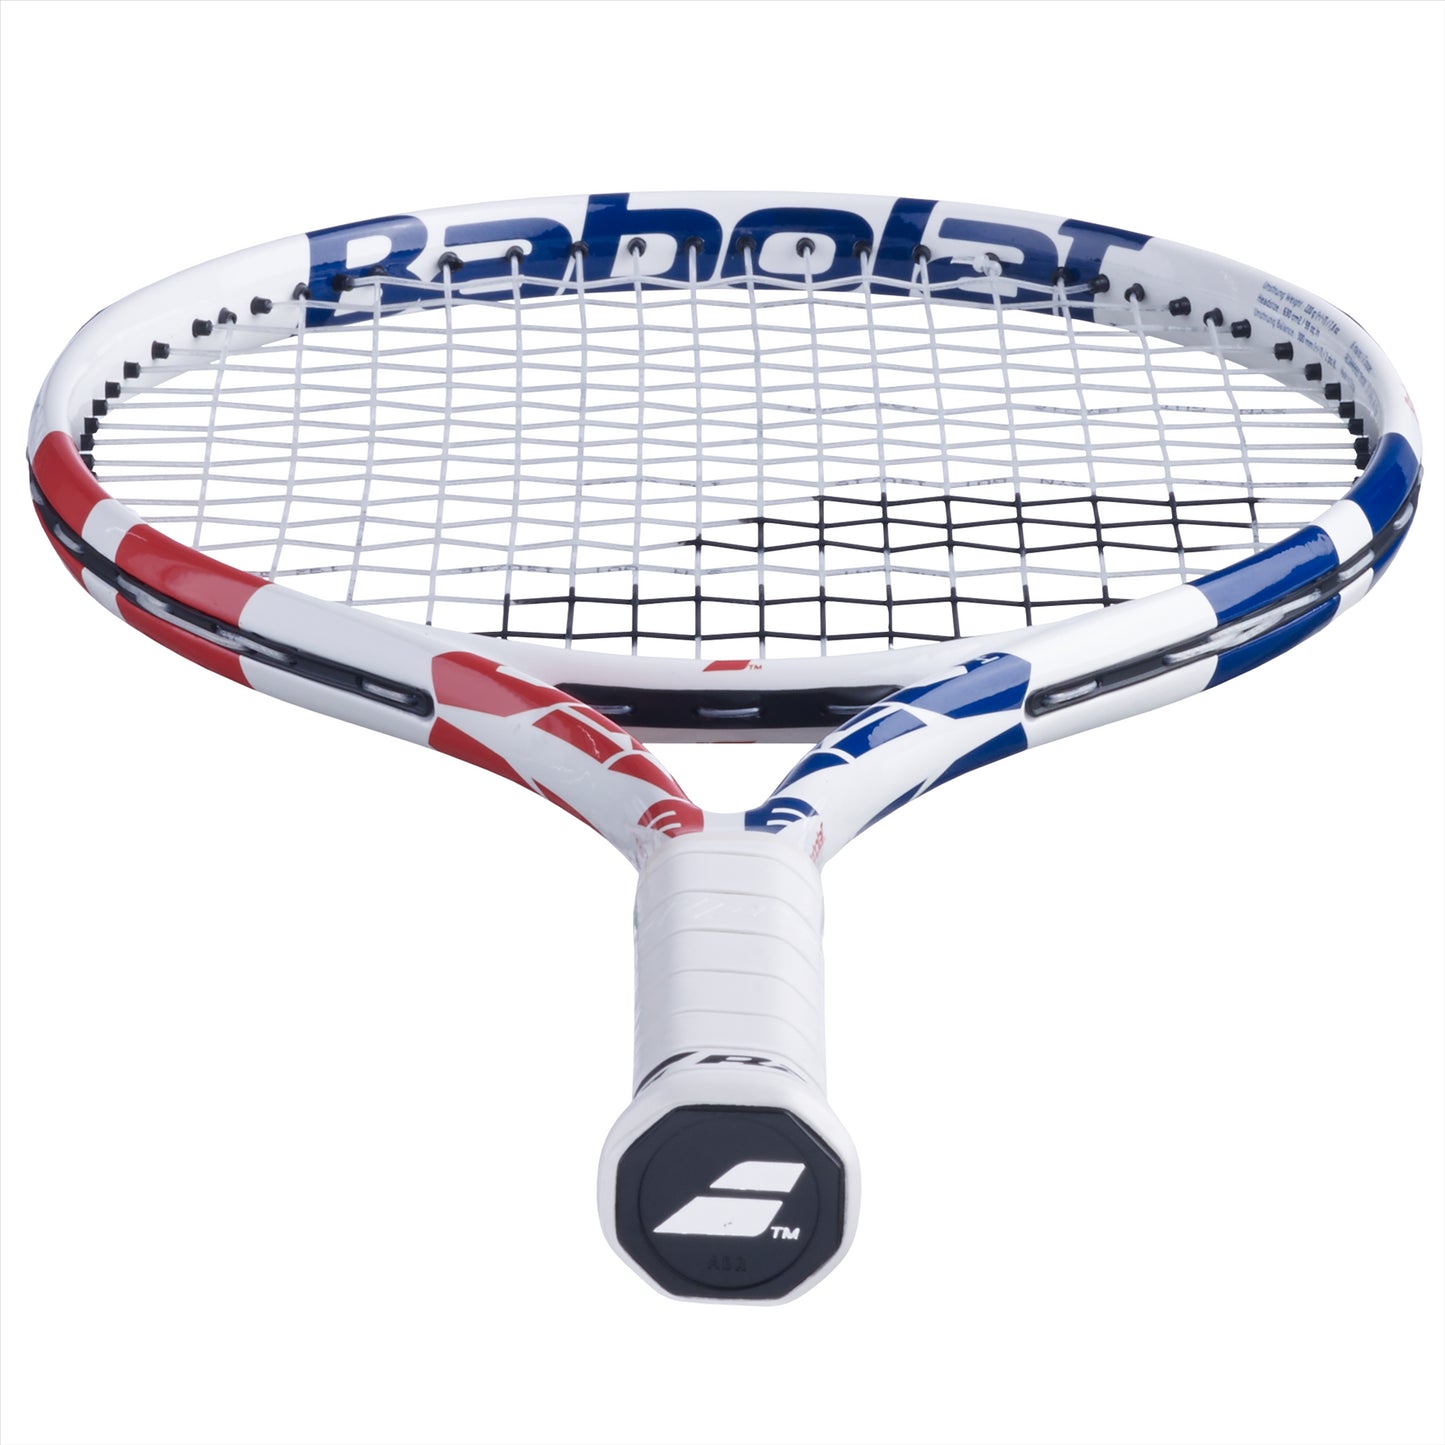 Babolat Drive Junior 24 Girls Tennis Racket - White / Pink / Blue - Base